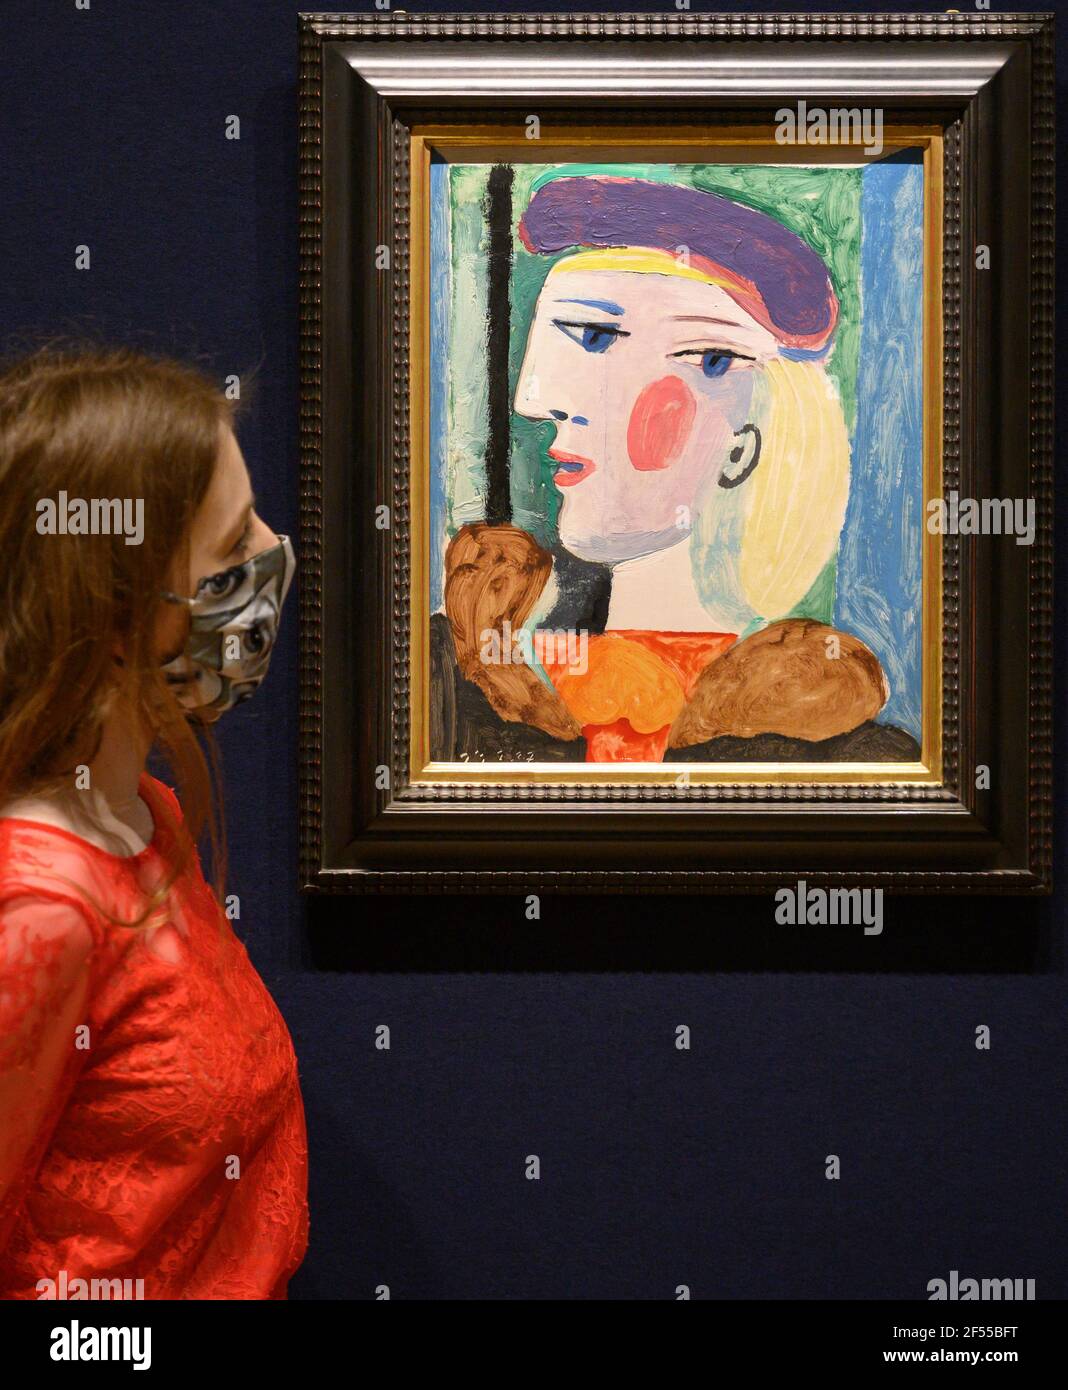 Bonhams, London, Großbritannien. 24. März 2021. Ein großes Picasso-Porträt, das fast 40 Jahre lang nicht gesehen wurde, Femme au Béret Mauve, Schätzung $10.000.000-15.000.000, wird am Donnerstag, dem 13. Mai, im Bonhams Impressionist and Modern Art Sale in New York zum Verkauf angeboten. Femme au Béret Mauve, gemalt 1937, eines der fruchtbarsten Jahre des Künstlers, in dem er auch Guernica produzierte. Es ist eine von mehreren Darstellungen von Marie-Thérèse Walter gemalt in Le Tremblay-sur-Mauldre. Kredit: Malcolm Park/Alamy Stockfoto